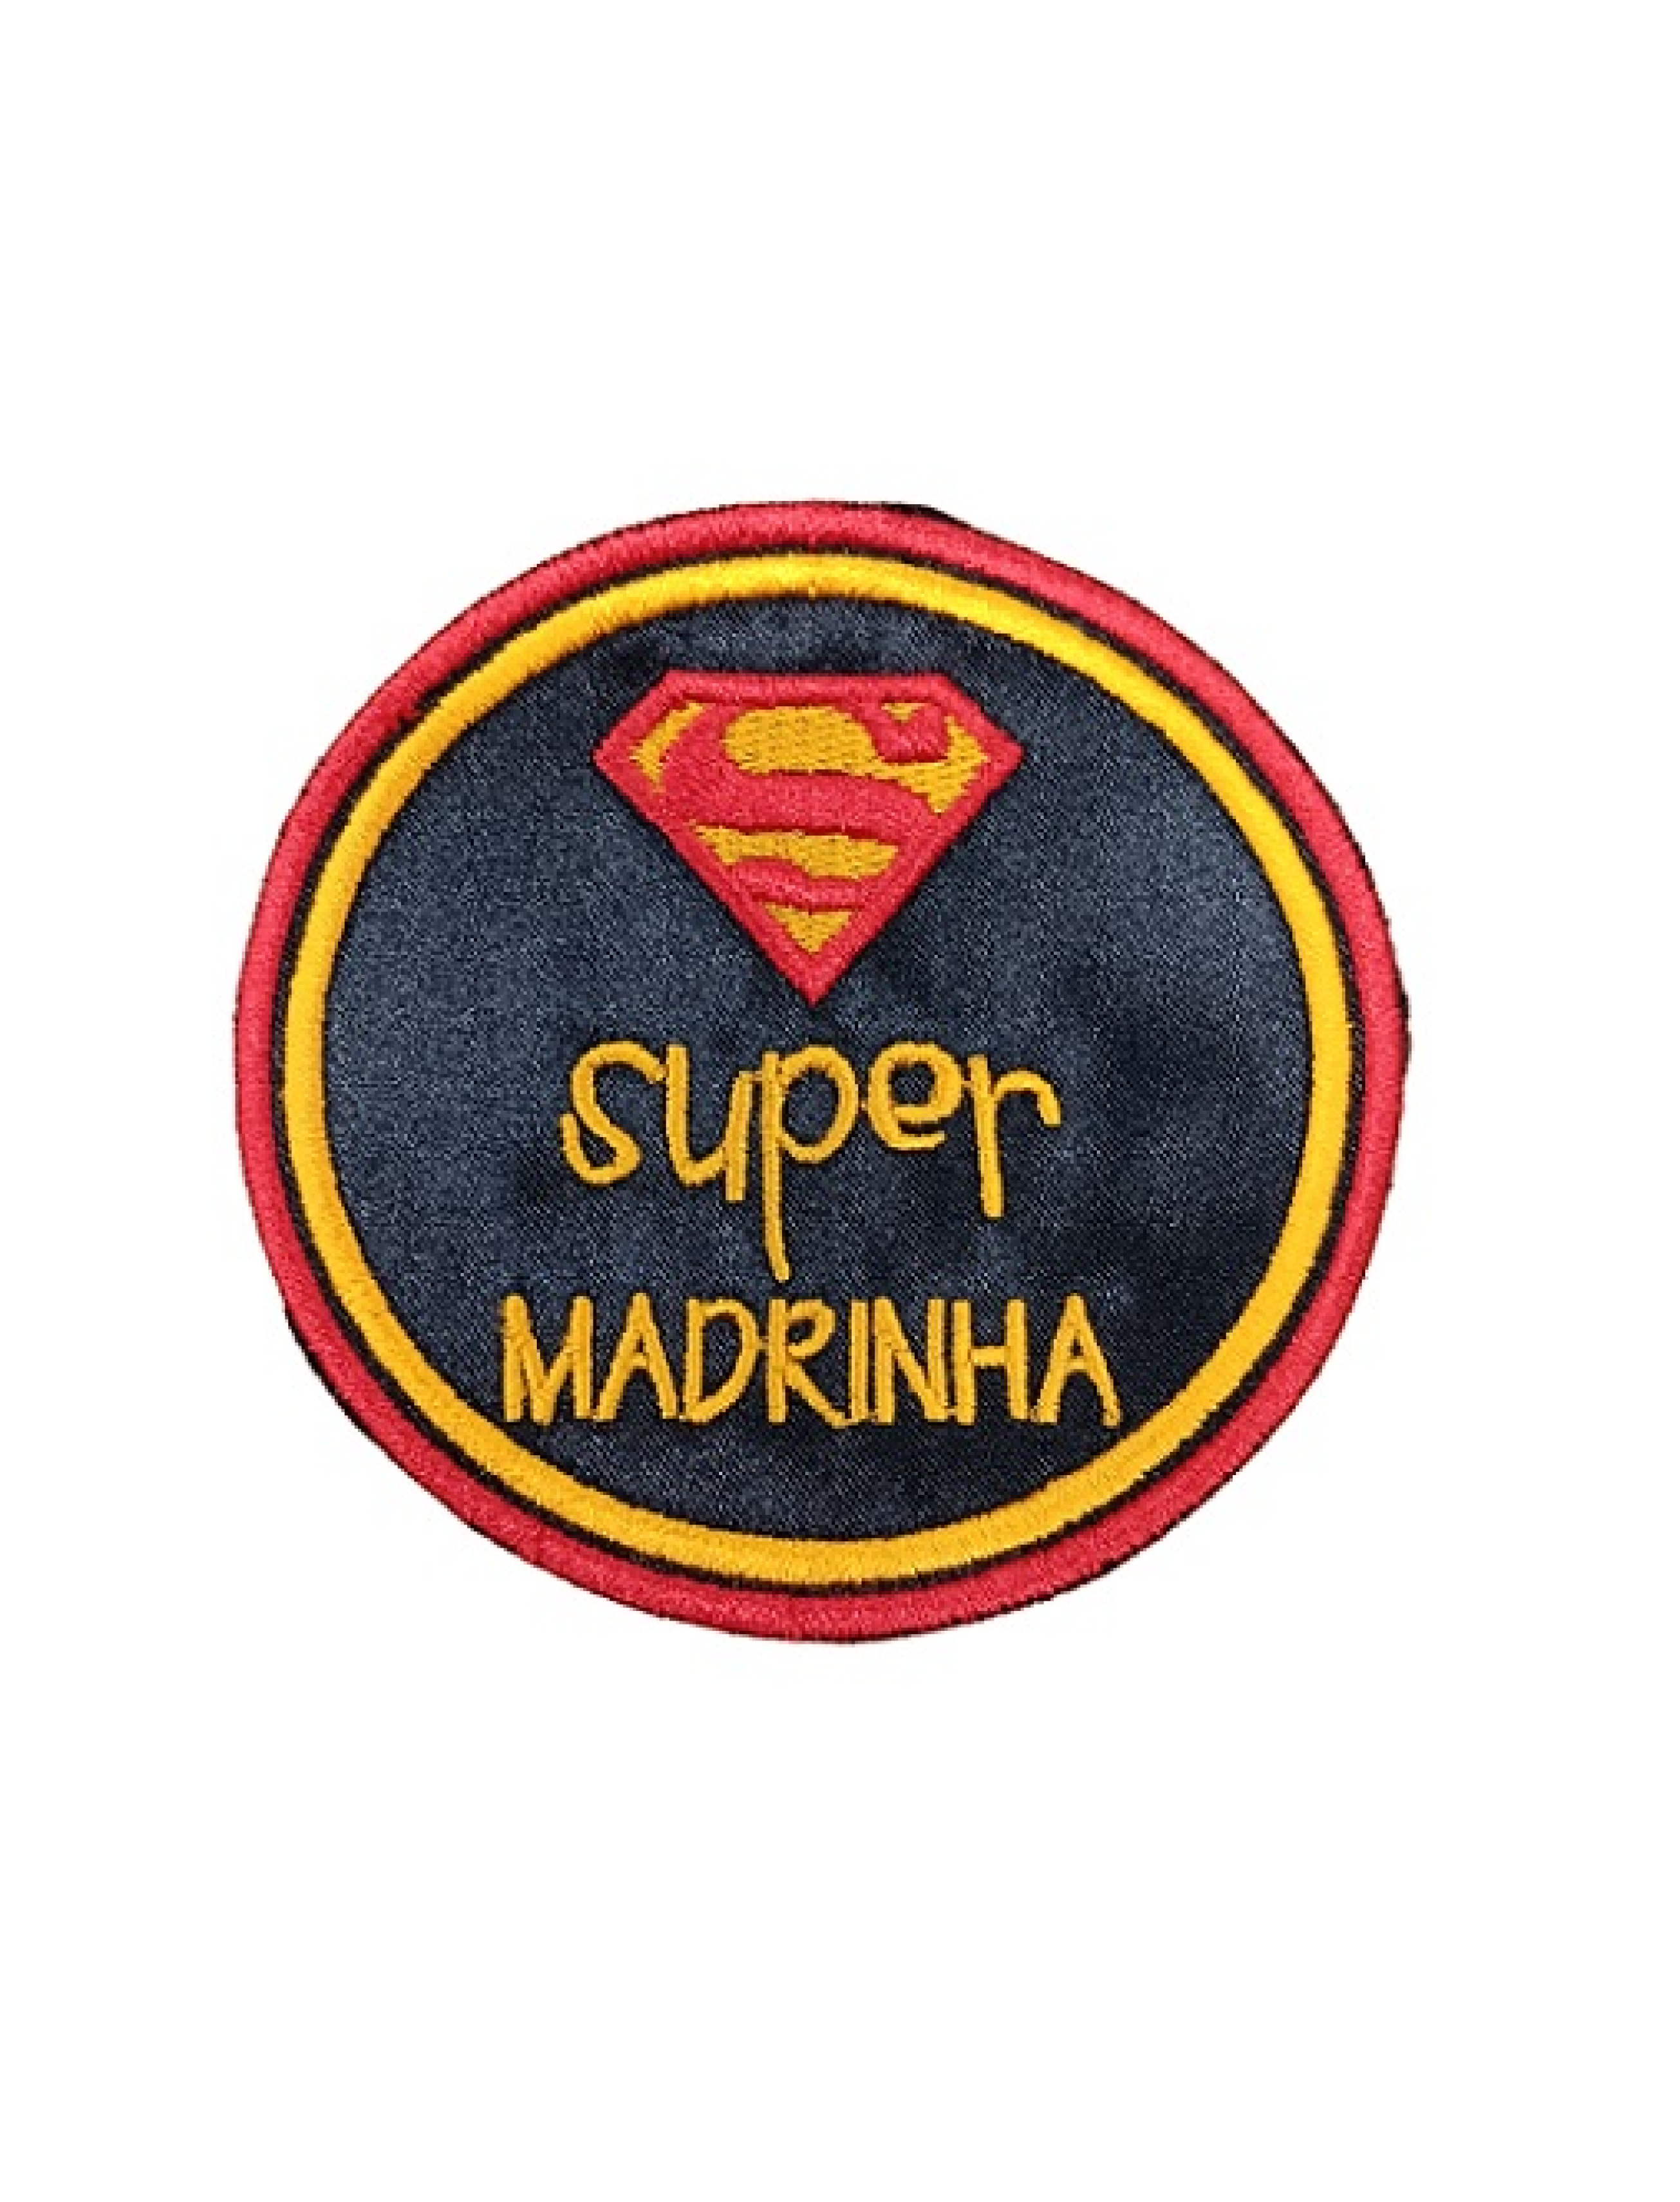 Super Madrinha - redondo Super Homem